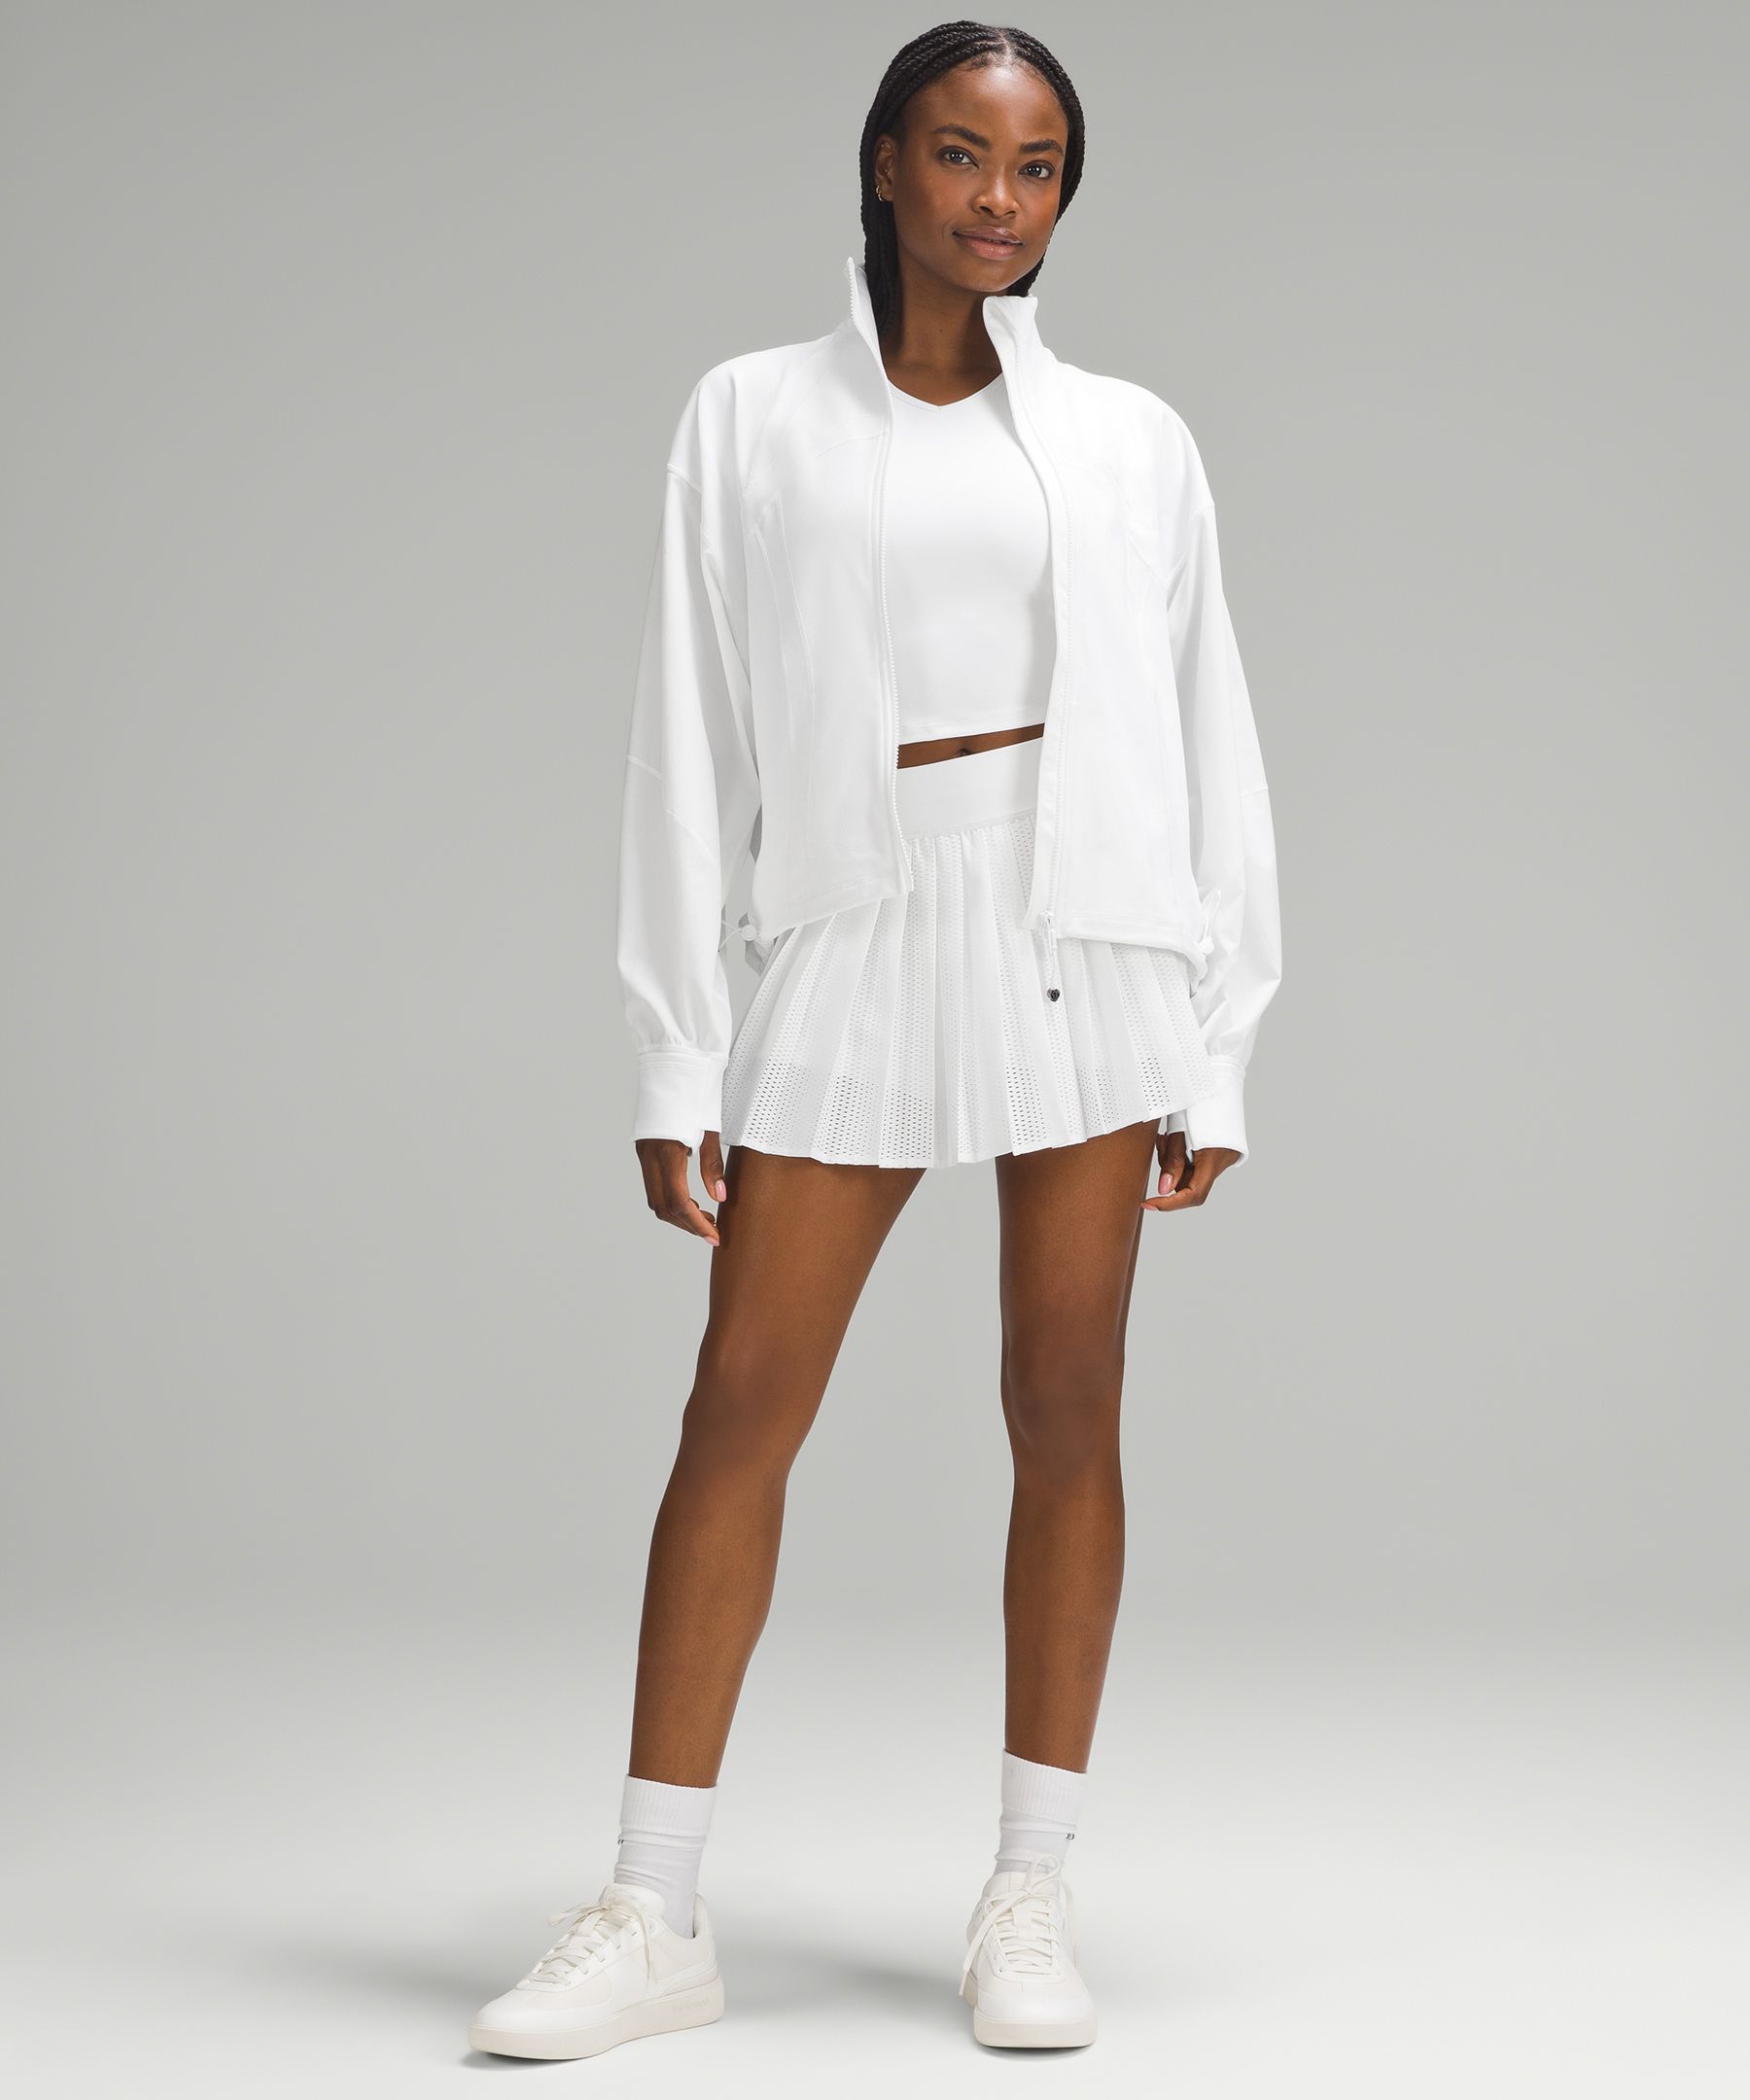 Define Relaxed-Fit Jacket *Luon | Women's Hoodies & Sweatshirts 